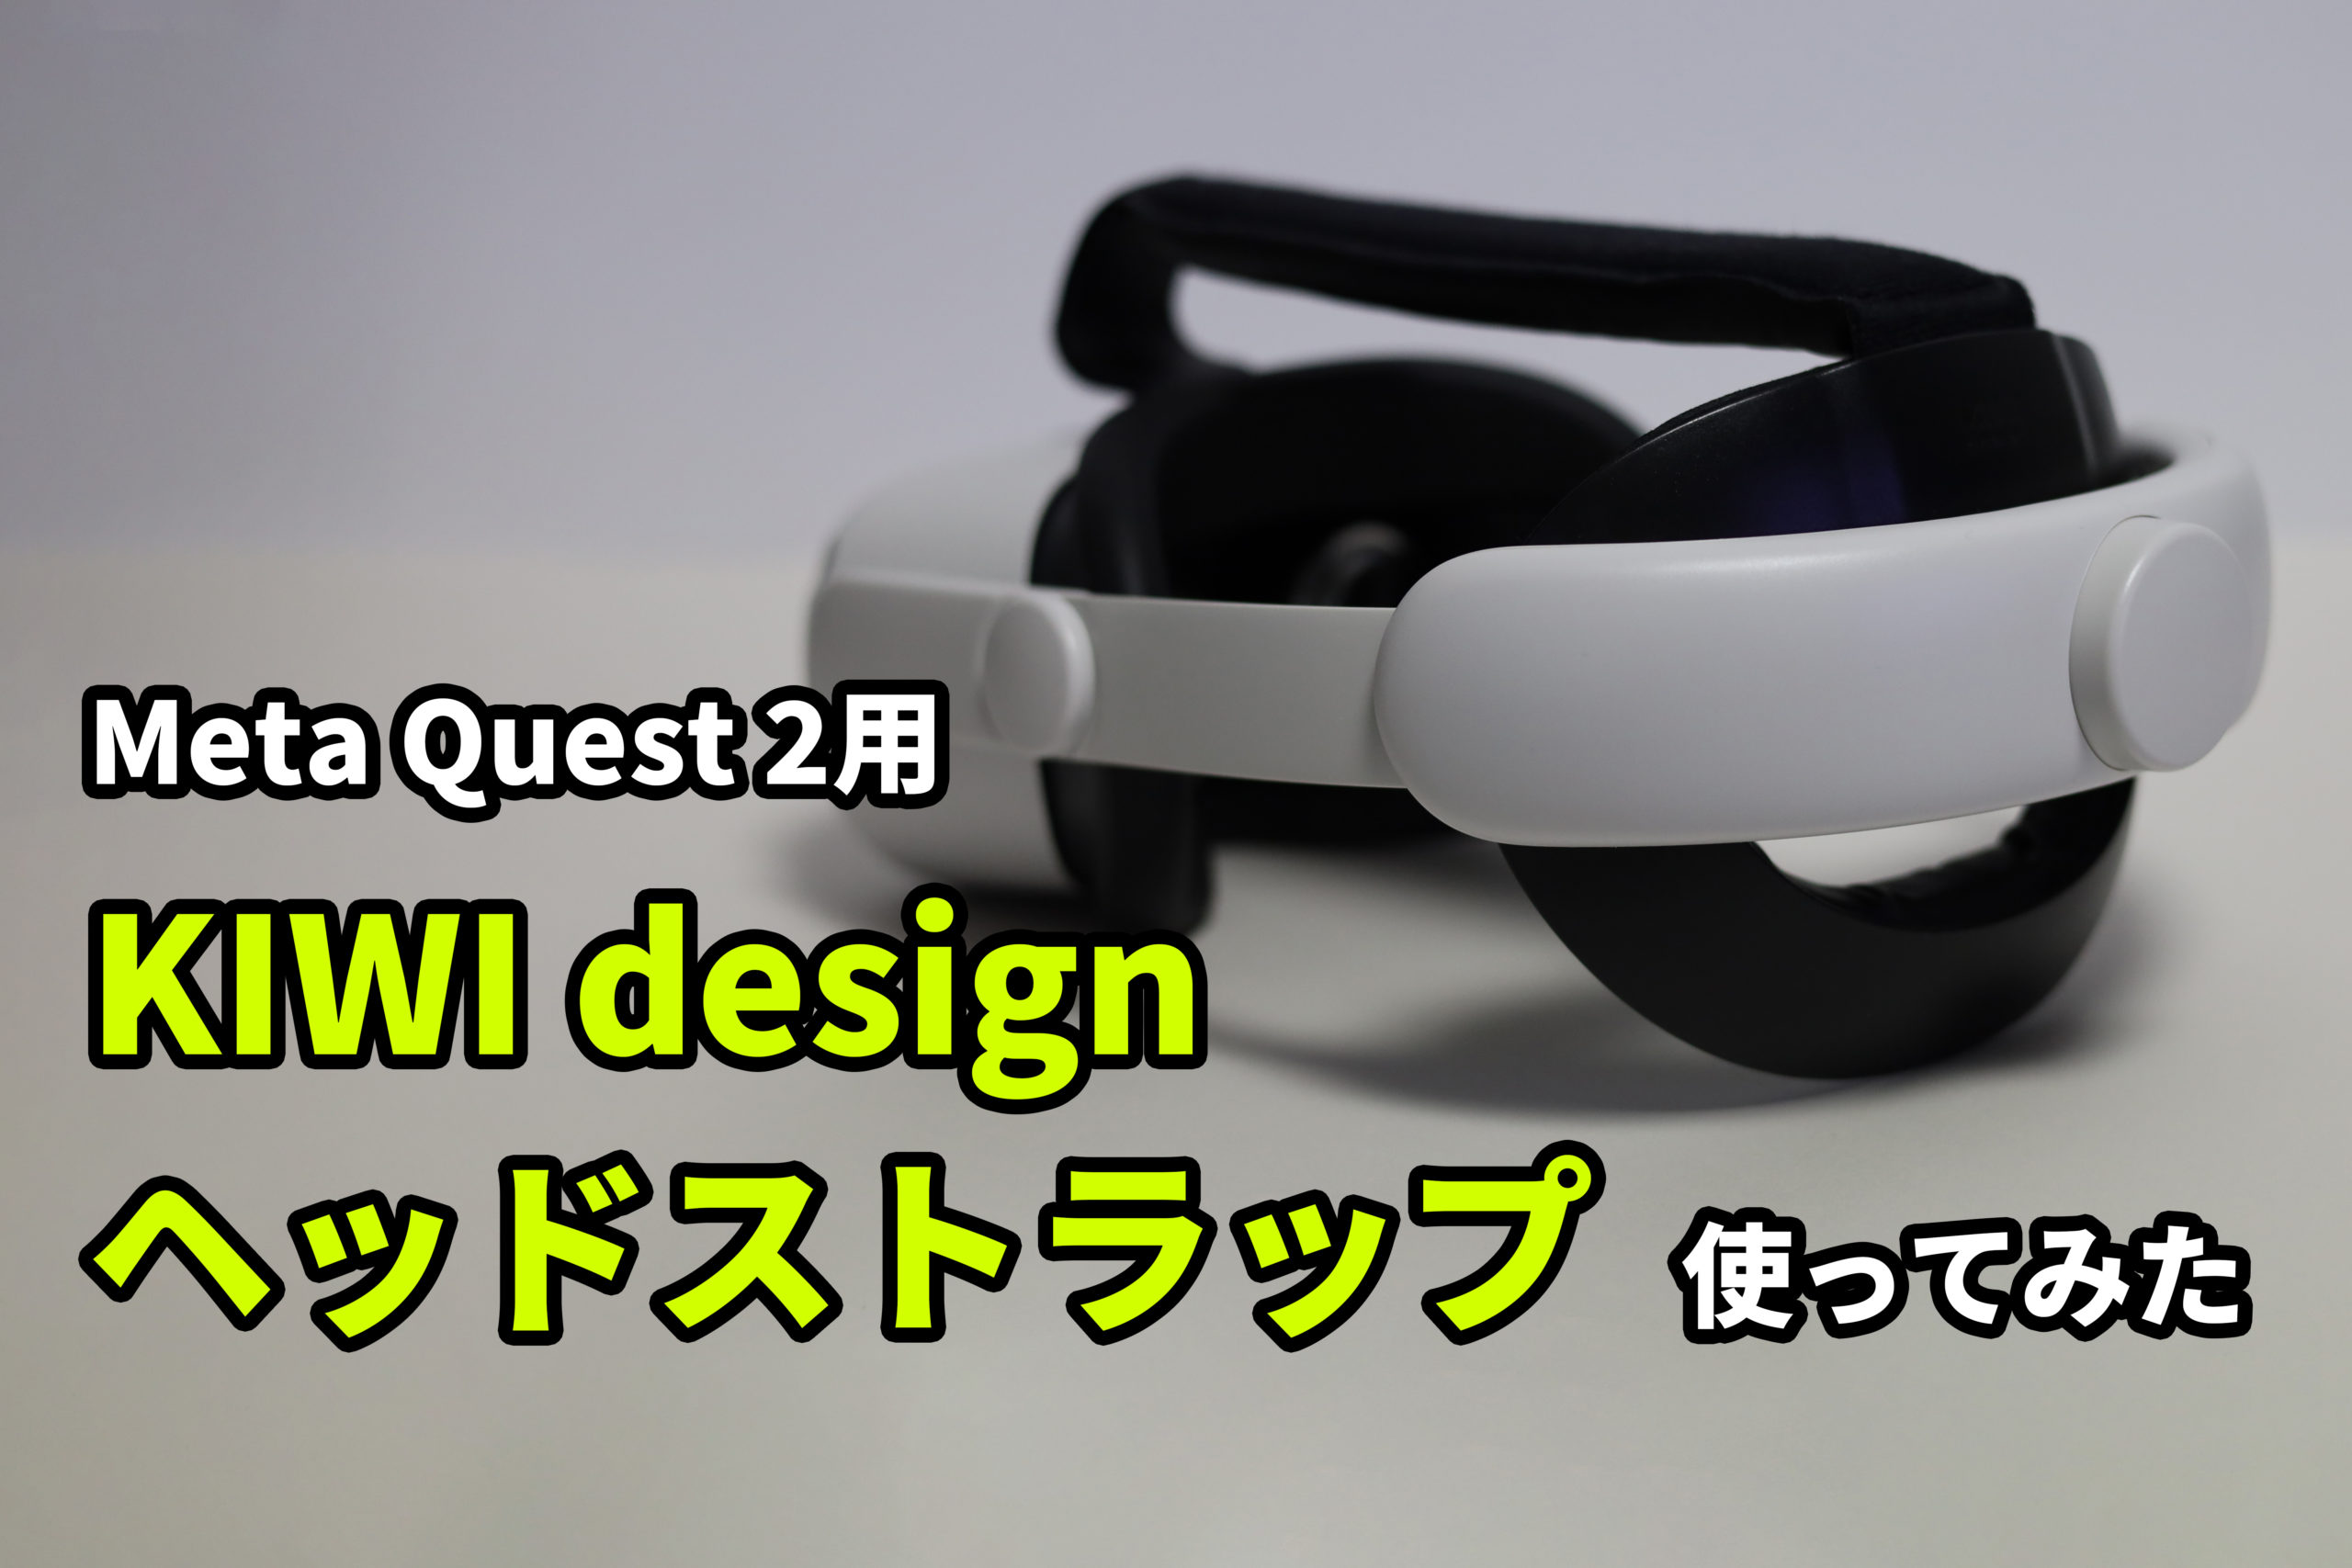 Meta Quest 2おすすめアイテム【KIWI design ヘッドストラップ